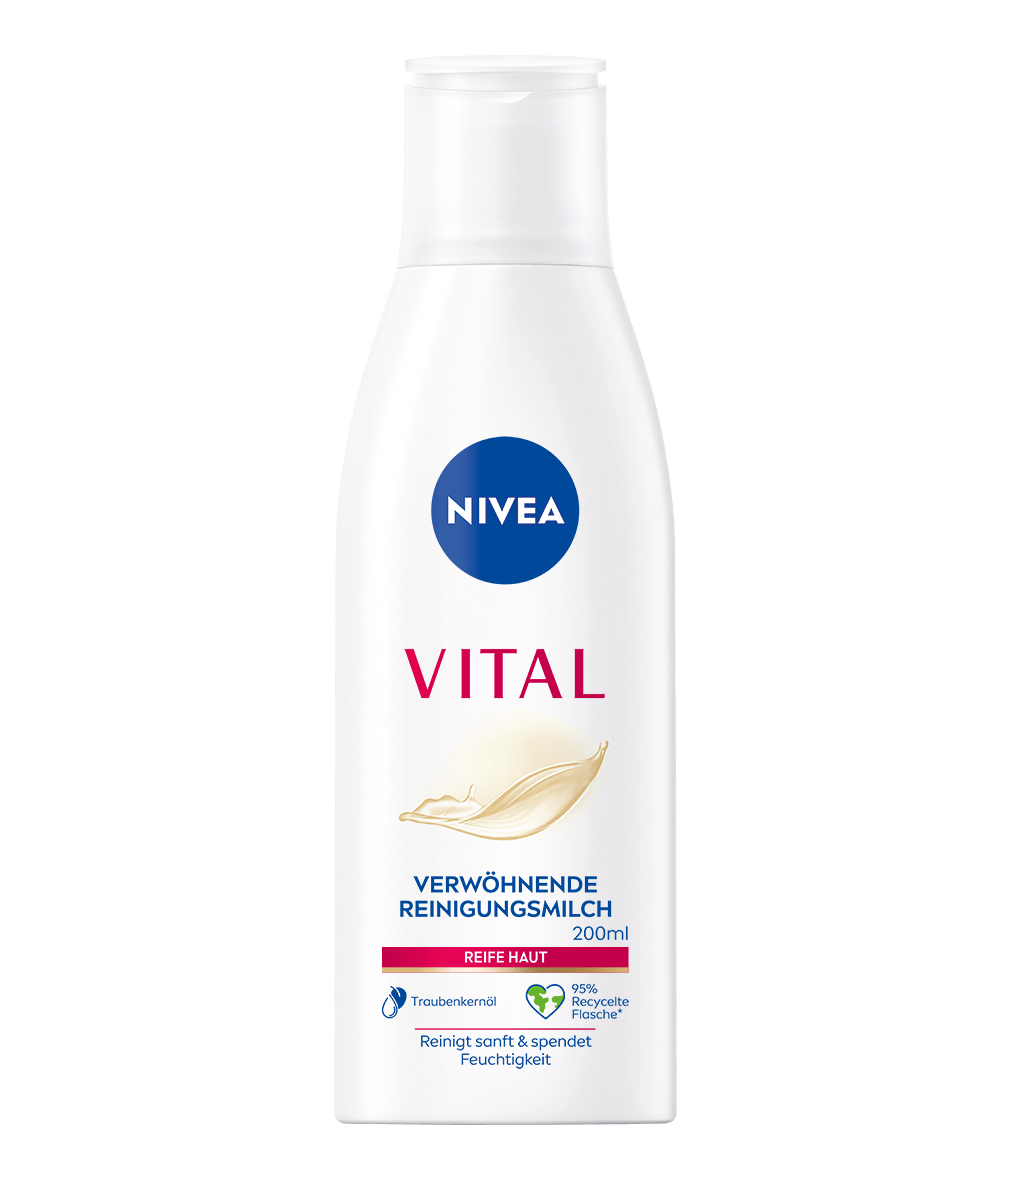 NIVEA VITAL Reinigungsmilch 200 ml